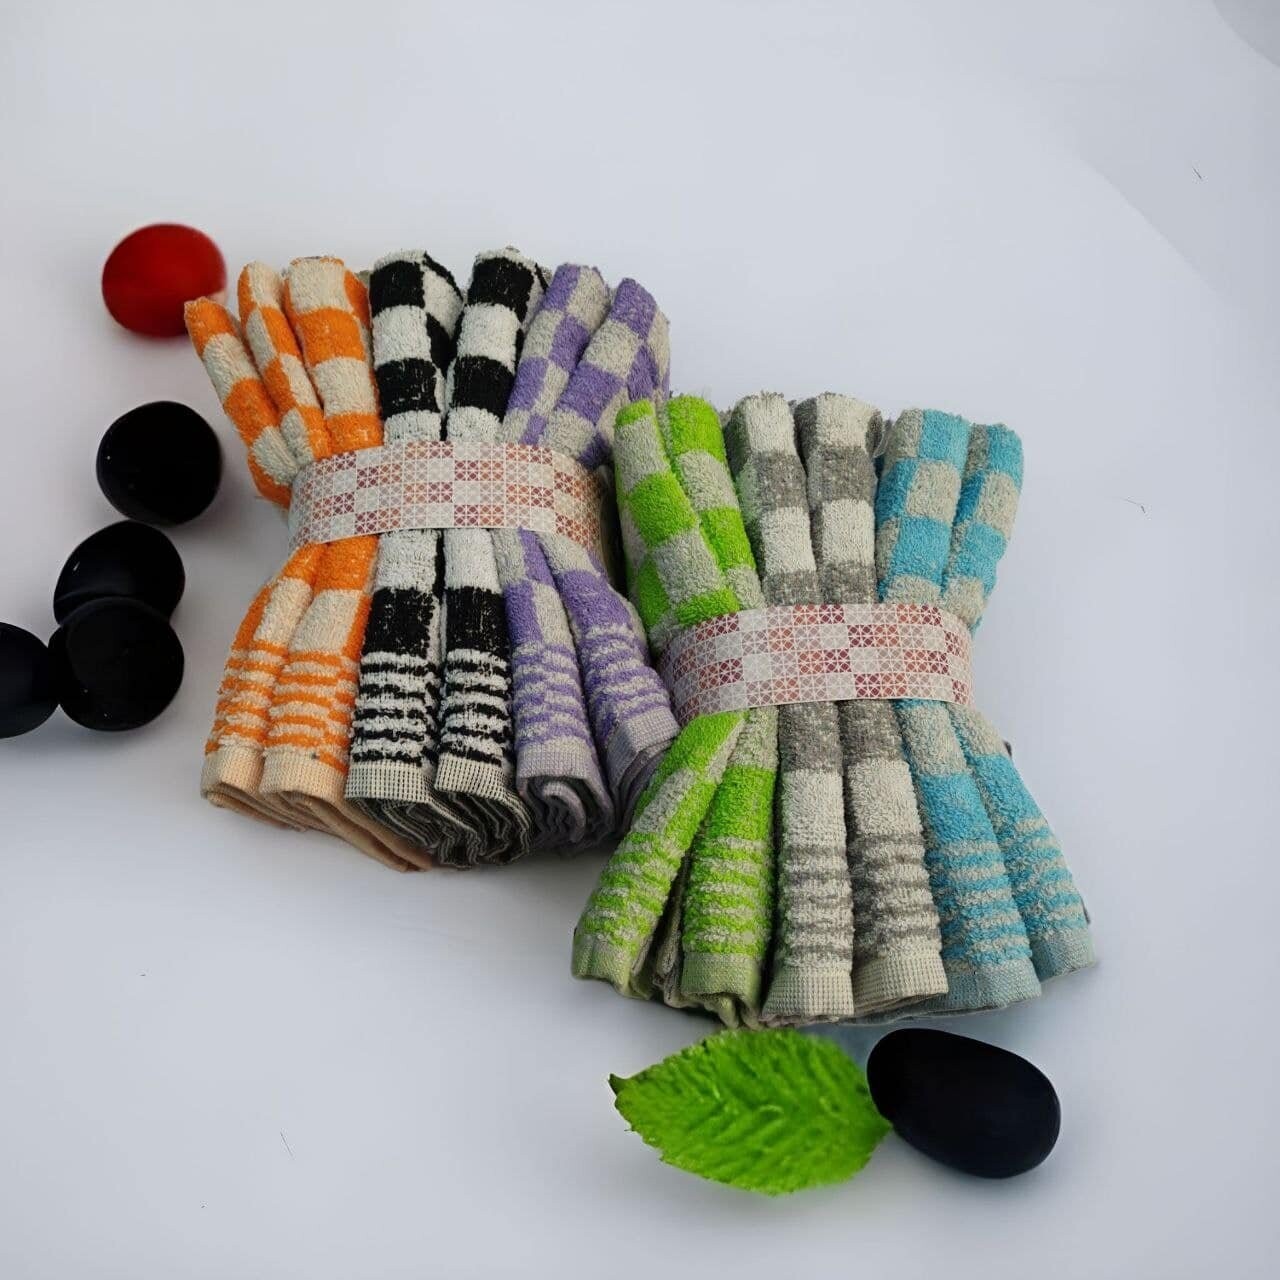 Trapos de cocina rizo set de 6 o 12 piezas paños de colores surtidos modelo Parchís de 50 x 50cm fabricados en Portugal.